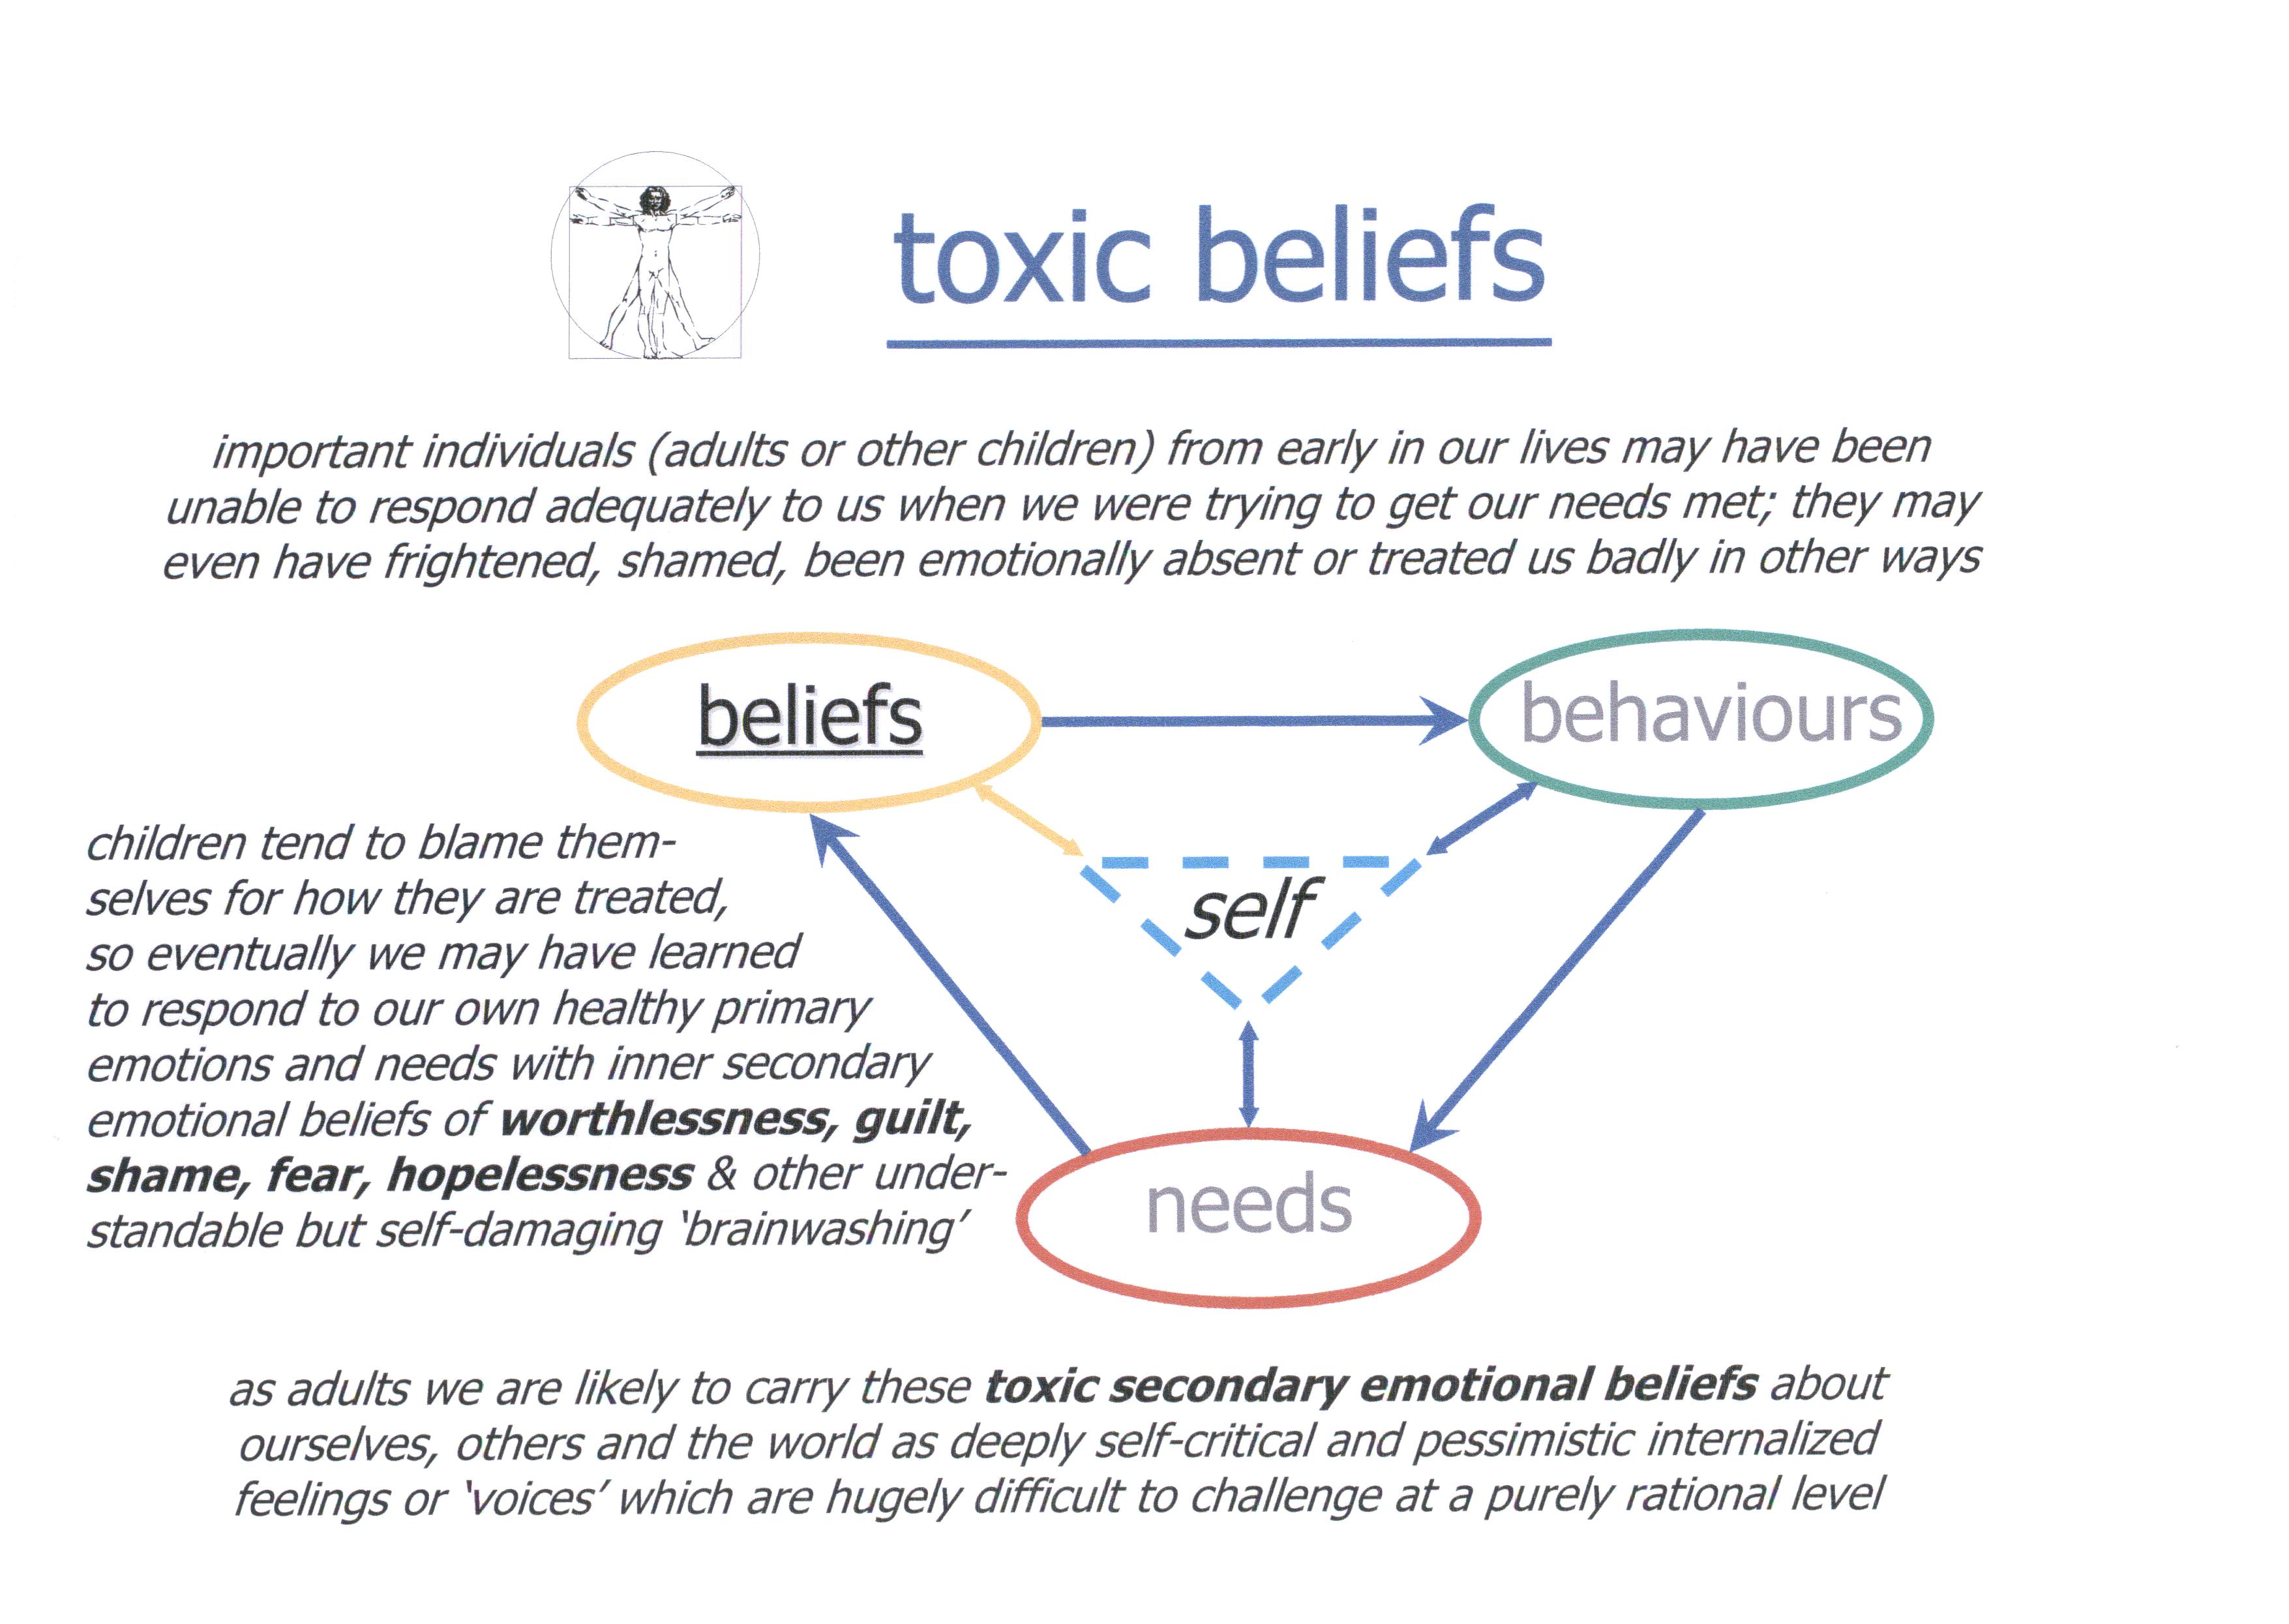 Toxic beliefs